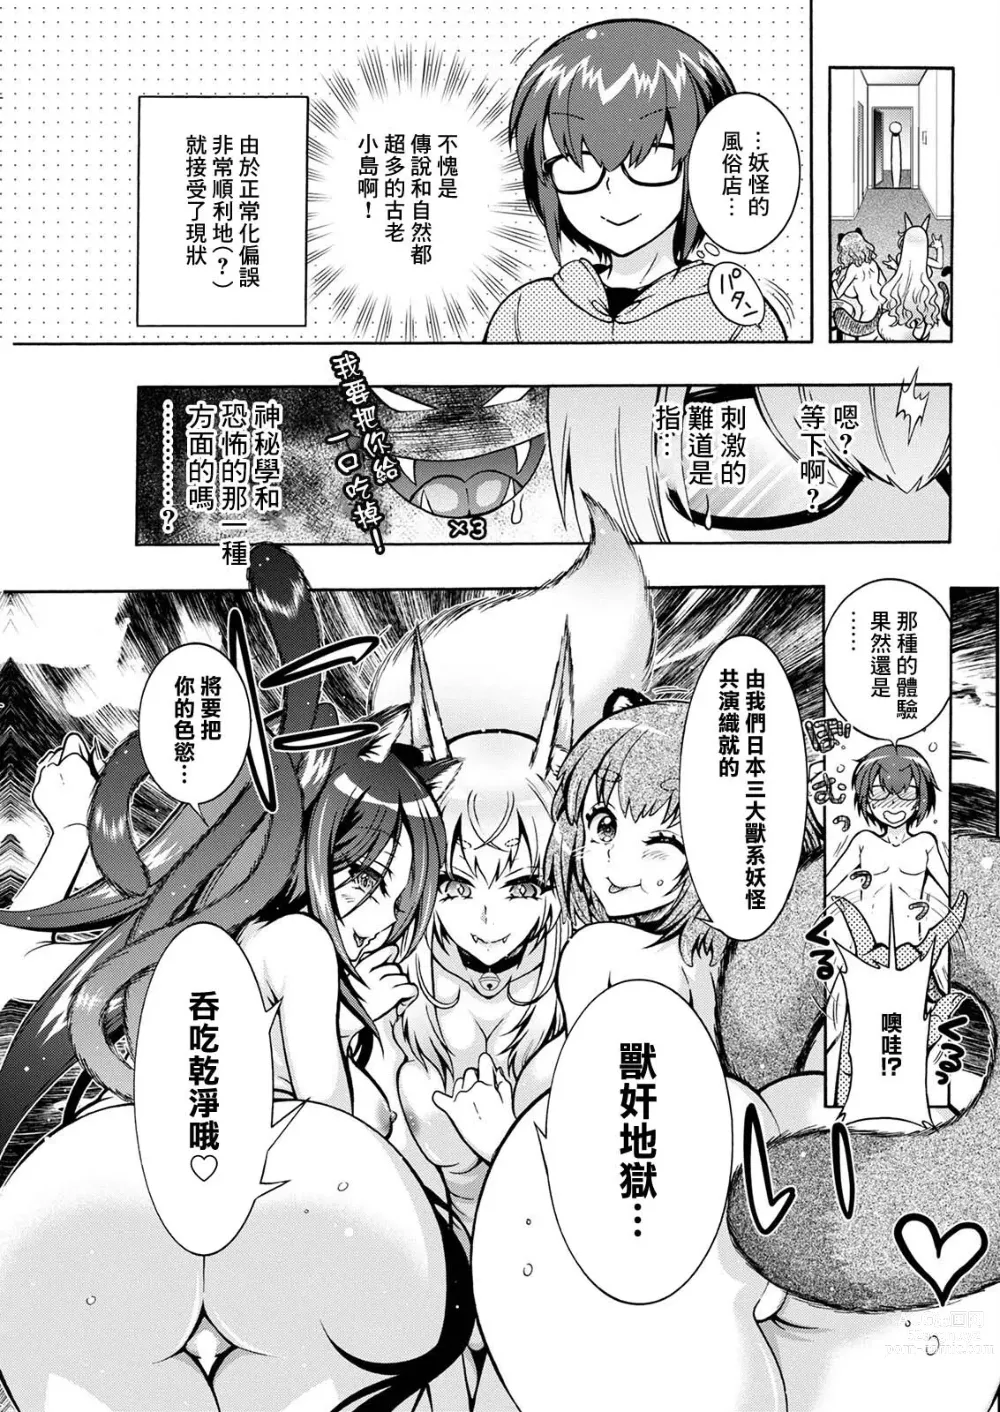 Page 5 of manga Youkai Echichi Ch. 5